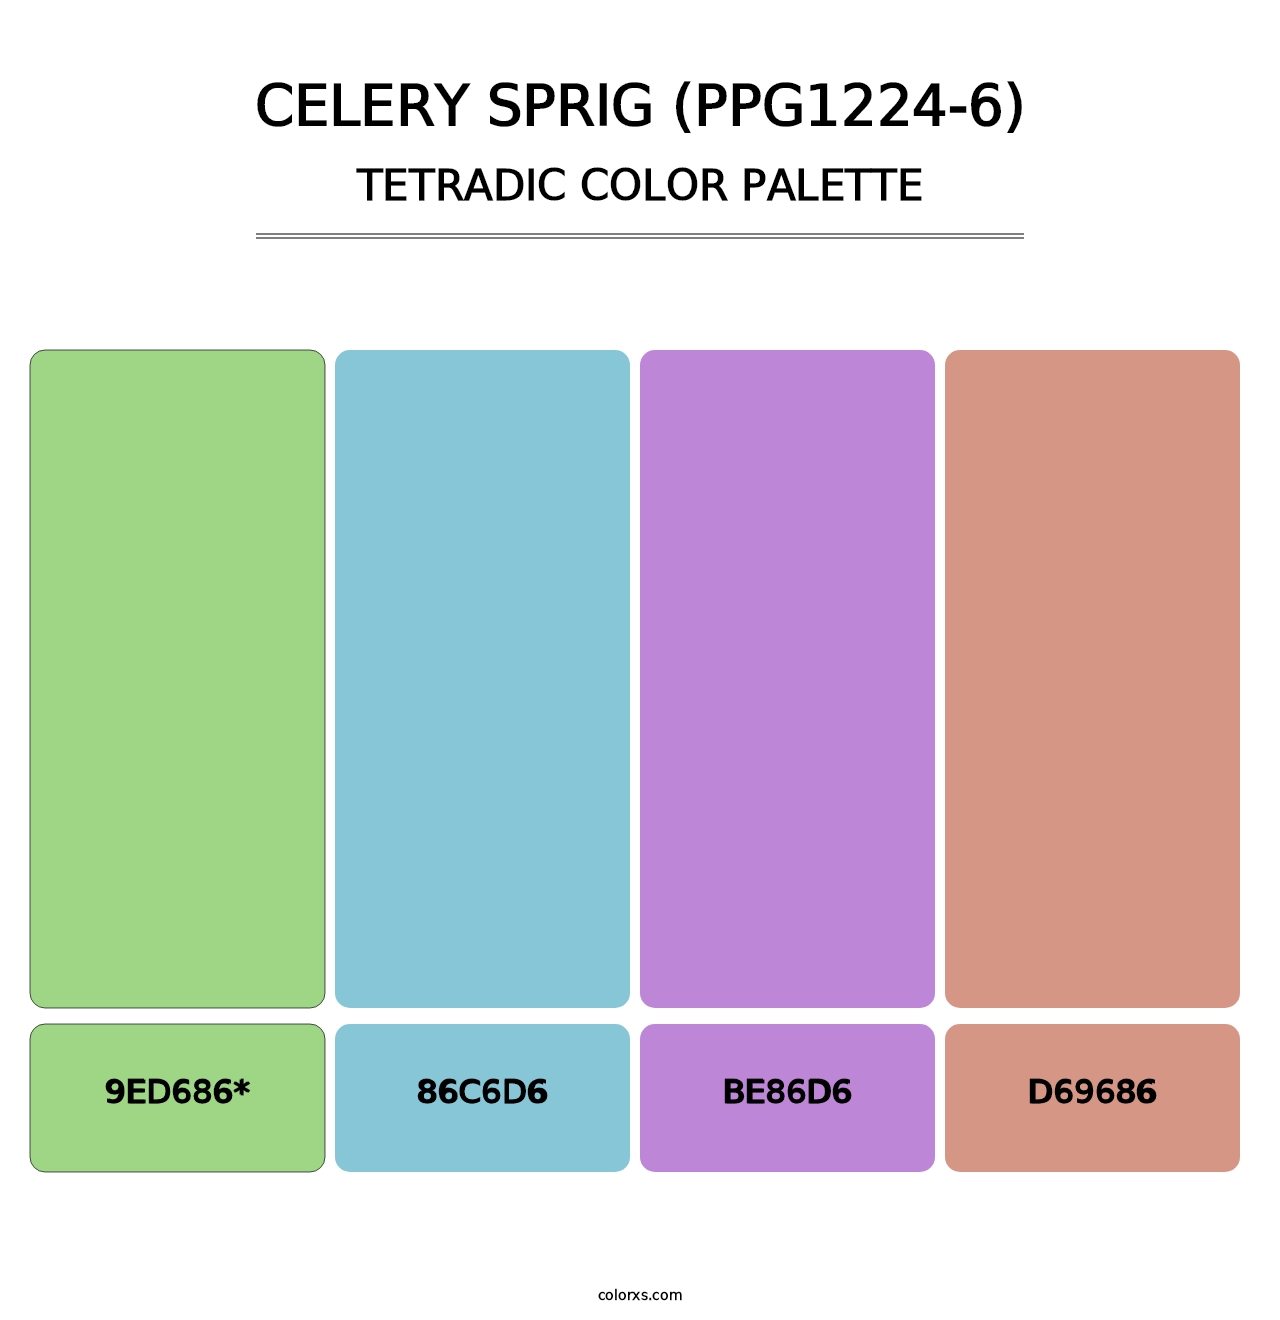 Celery Sprig (PPG1224-6) - Tetradic Color Palette